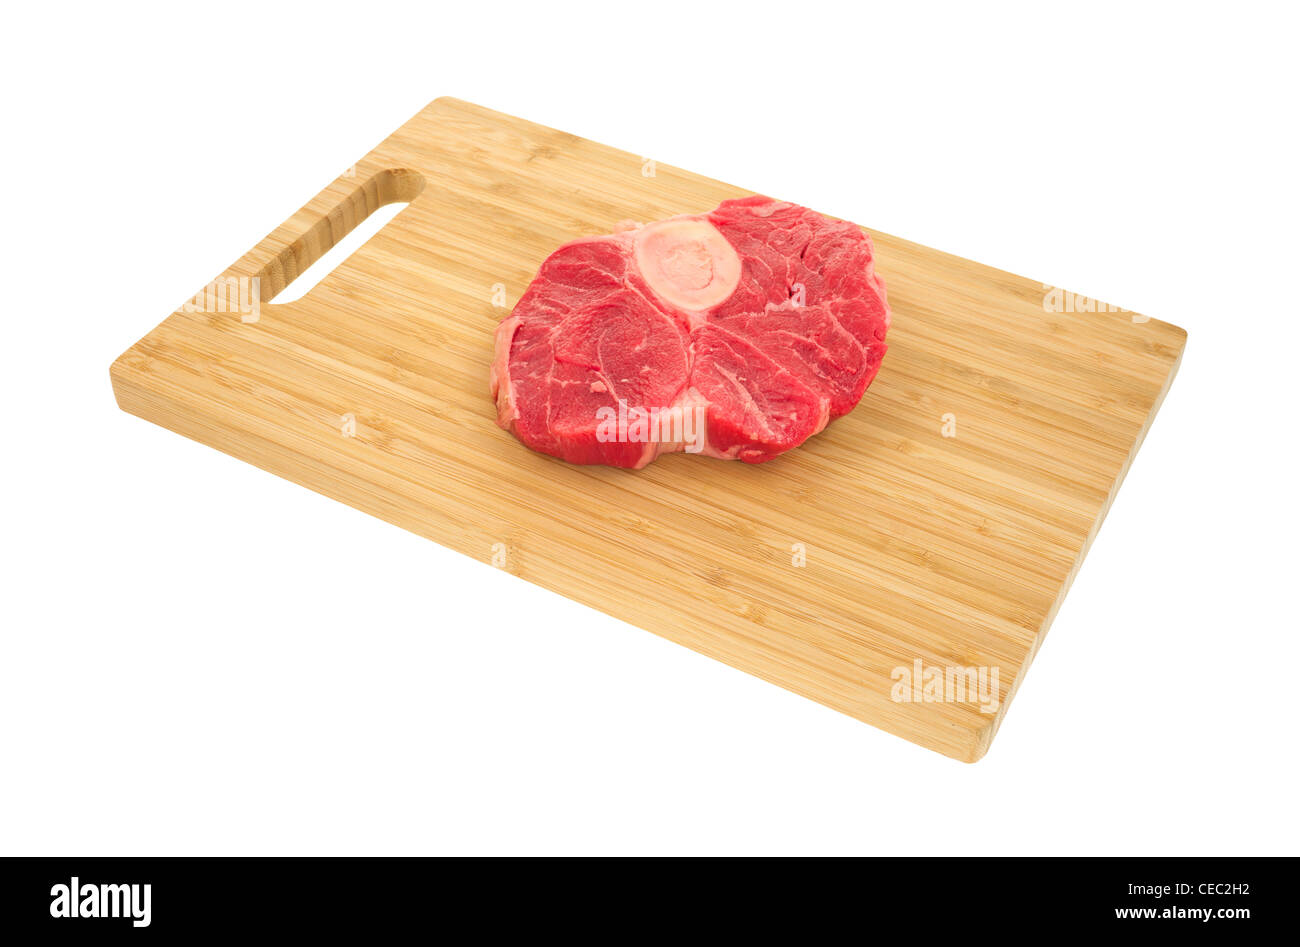 Steak de boeuf jarret arrière on cutting board Banque D'Images